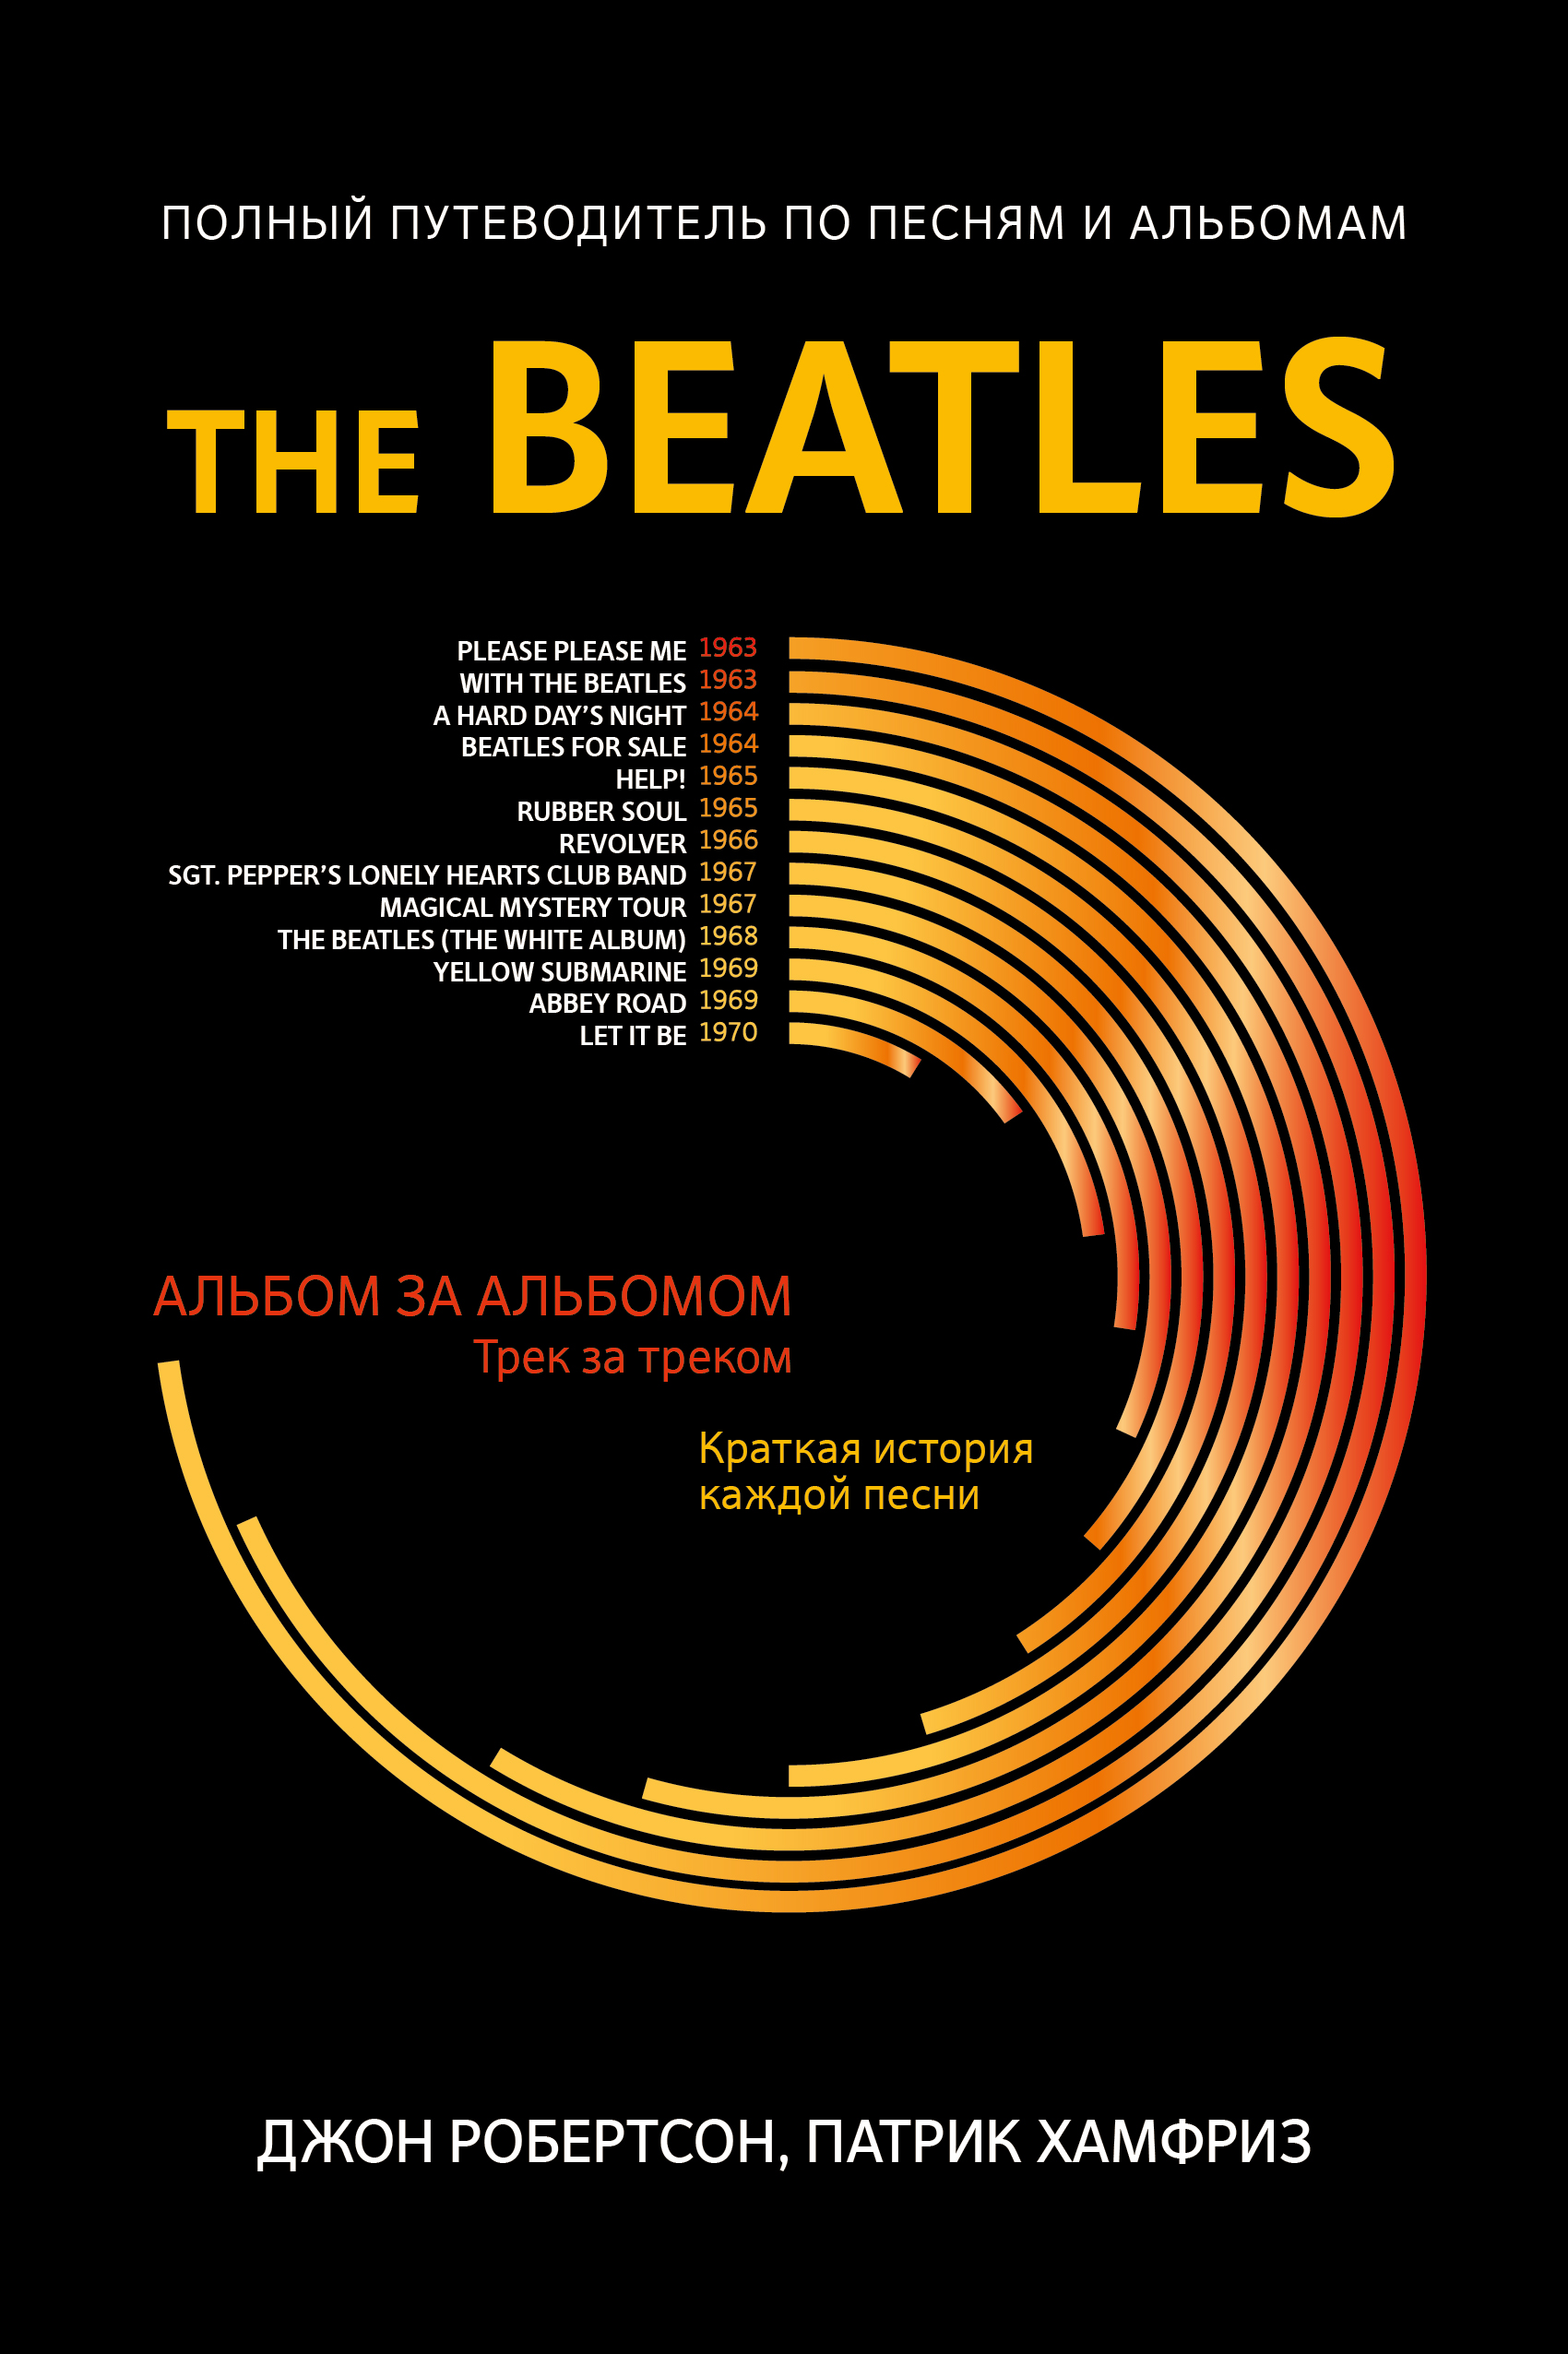 Хамфриз Патрик The Beatles: полный путеводитель по песням и альбомам